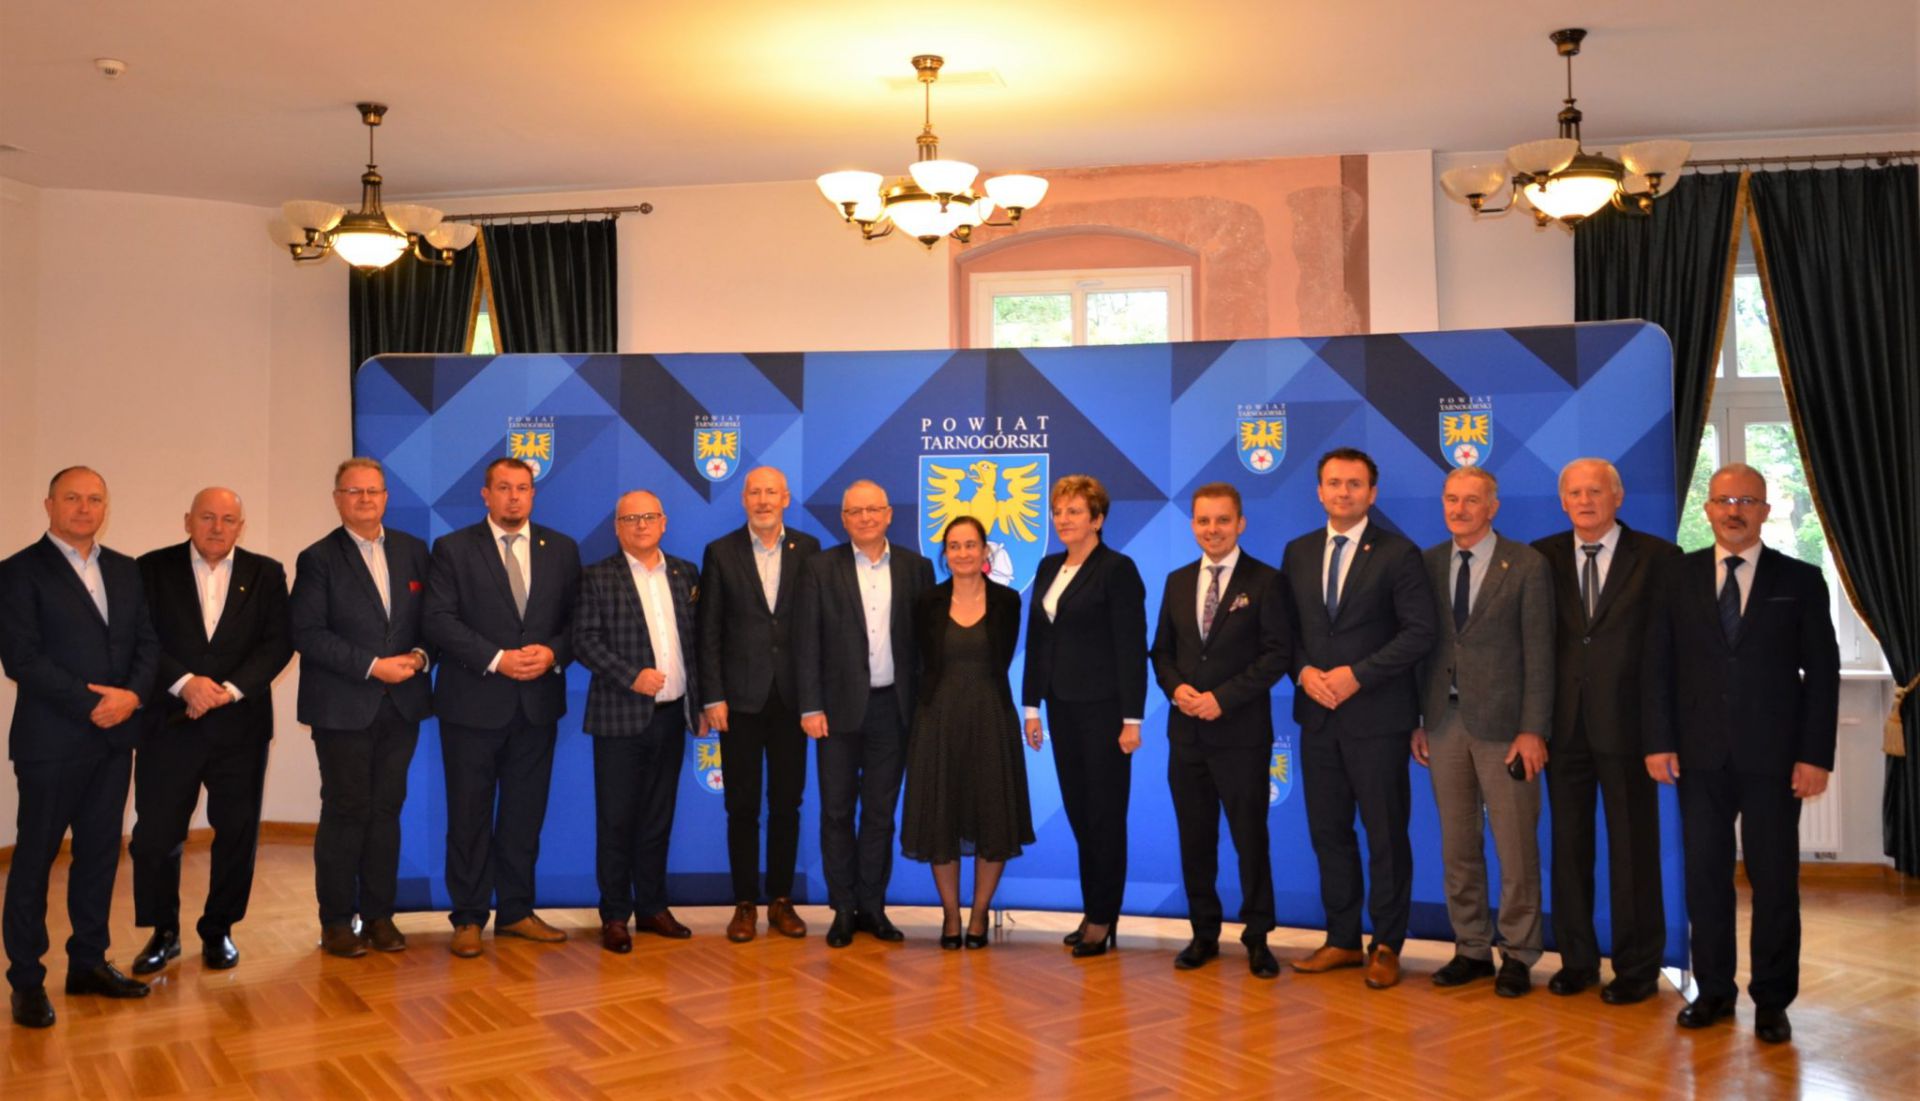 Pamiątkowe grupowe zdjęcie starostów województwa śląskiego podczas konwentu w Tarnowskich Górach